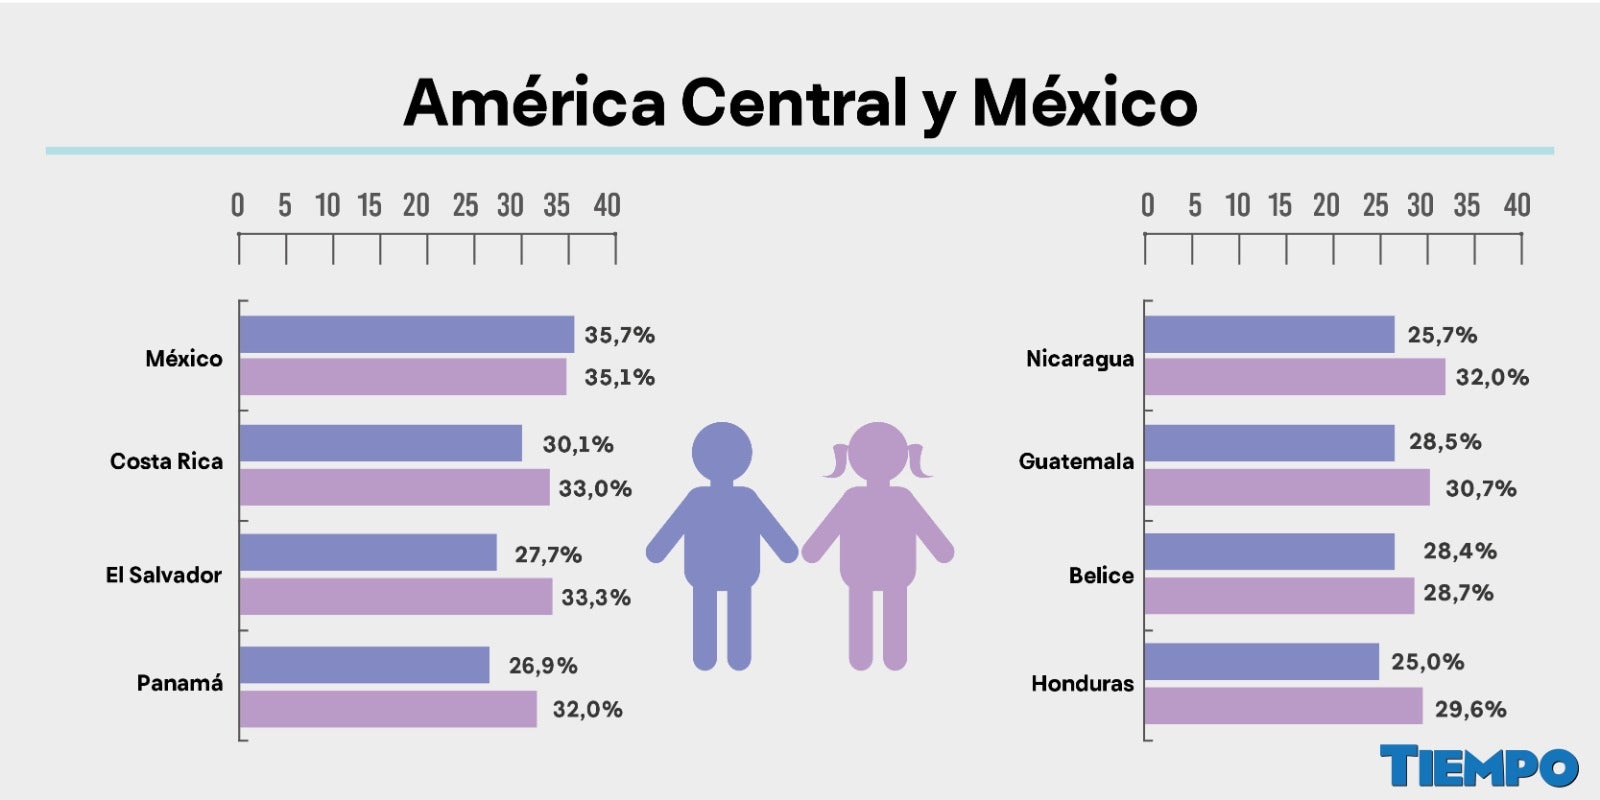 La gráfica muestra la prevalencia de sobrepeso por sexo (incluyendo obesidad) en niños, niñas y adolescentes de 5 a 19 años en países de América Central y México.